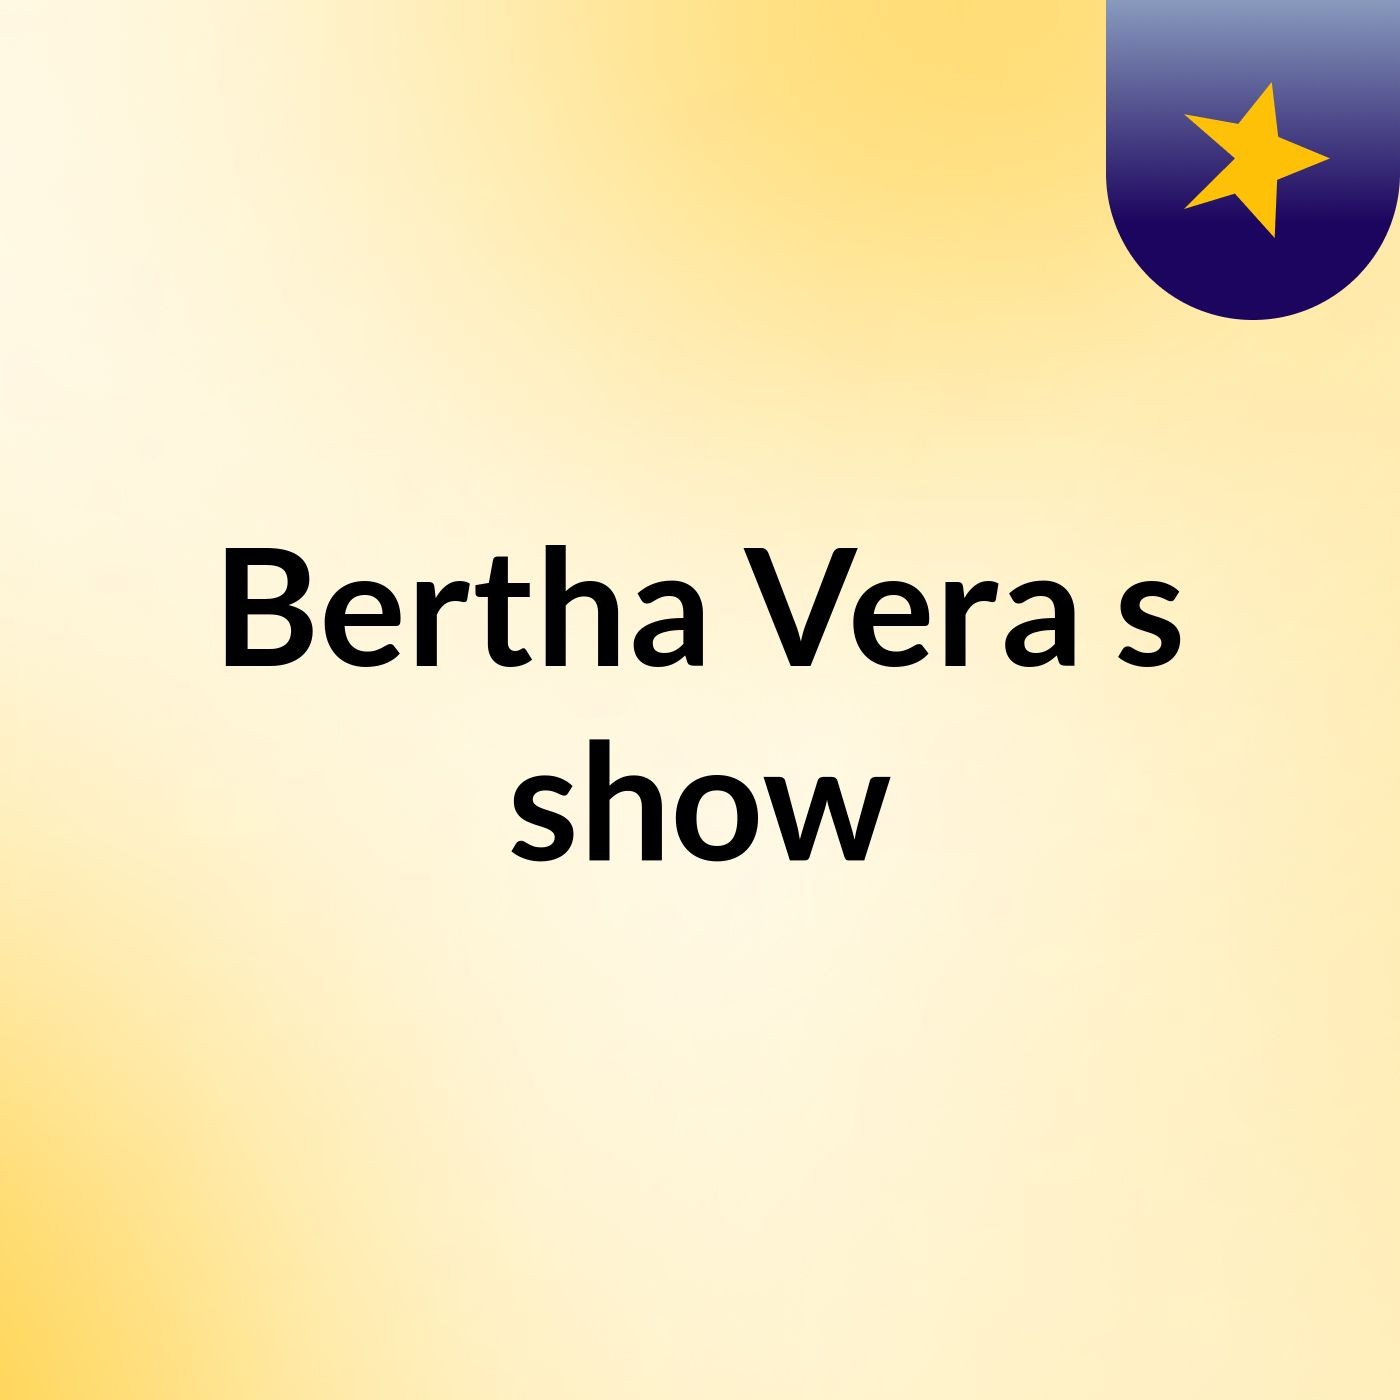 Bertha Vera's show